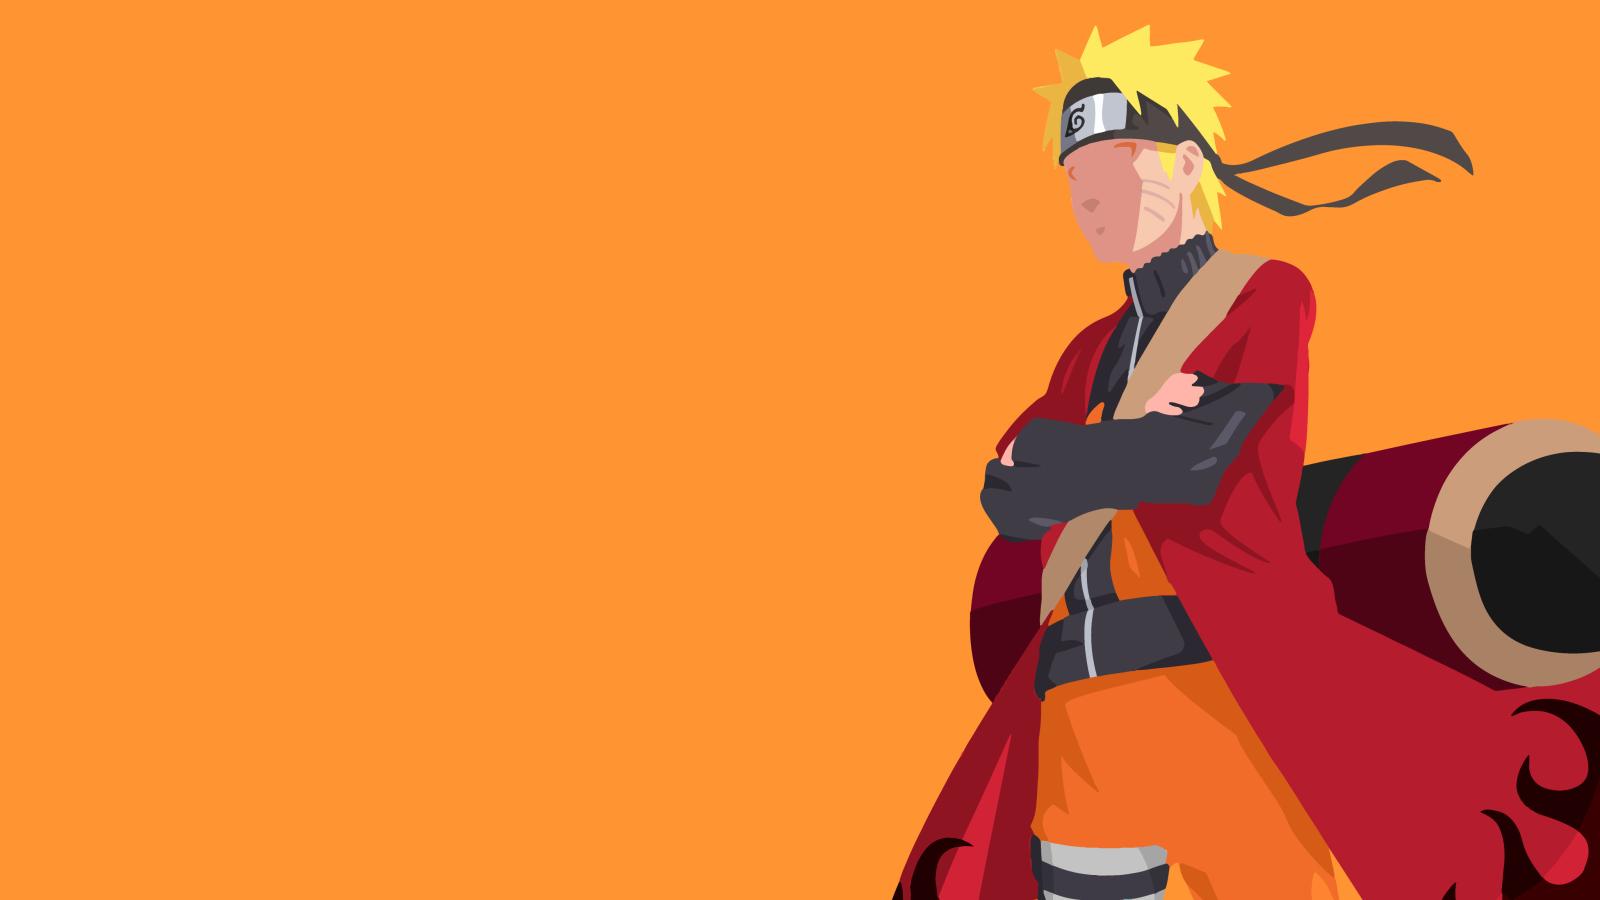 Naruto chắc chắn không còn xa lạ với những fan của anime và manga. Và nếu bạn thích Naruto, hãy thưởng thức những hình nền độc đáo, với độ phân giải 1600x900, tôn lên những chi tiết tinh tế của bộ truyện và lấy cảm hứng từ những nhân vật ấn tượng.